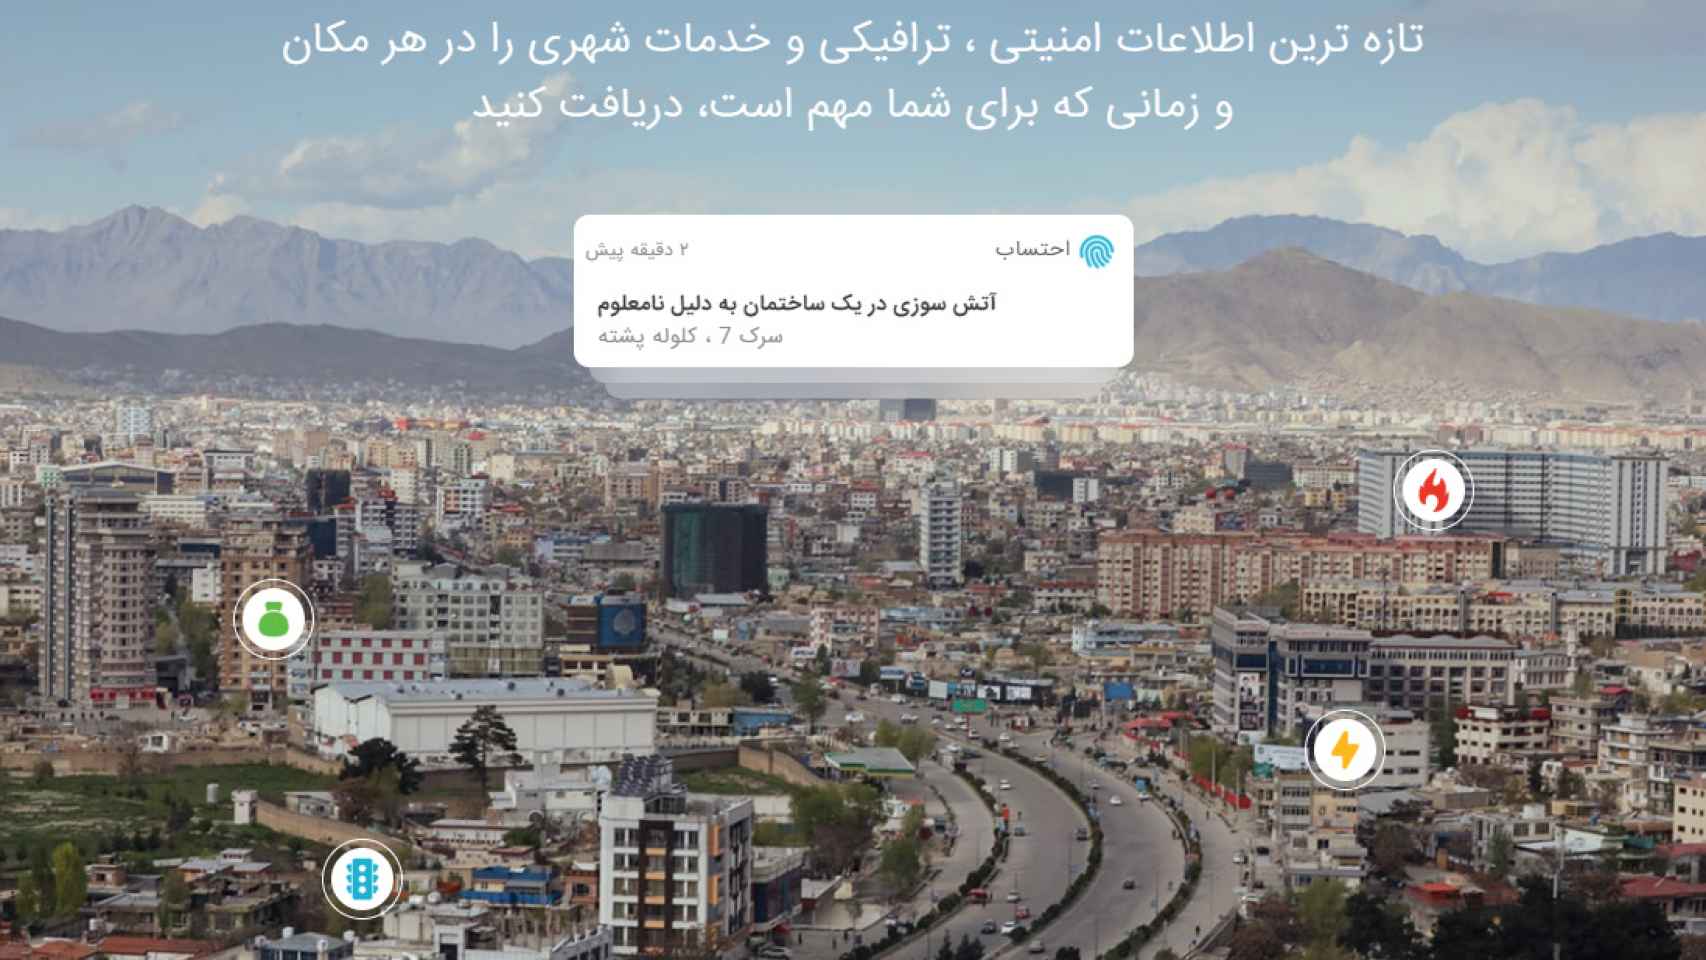 Ehtesab fue creada en 2018 e informa principalmente de lo que ocurre en Kabul.